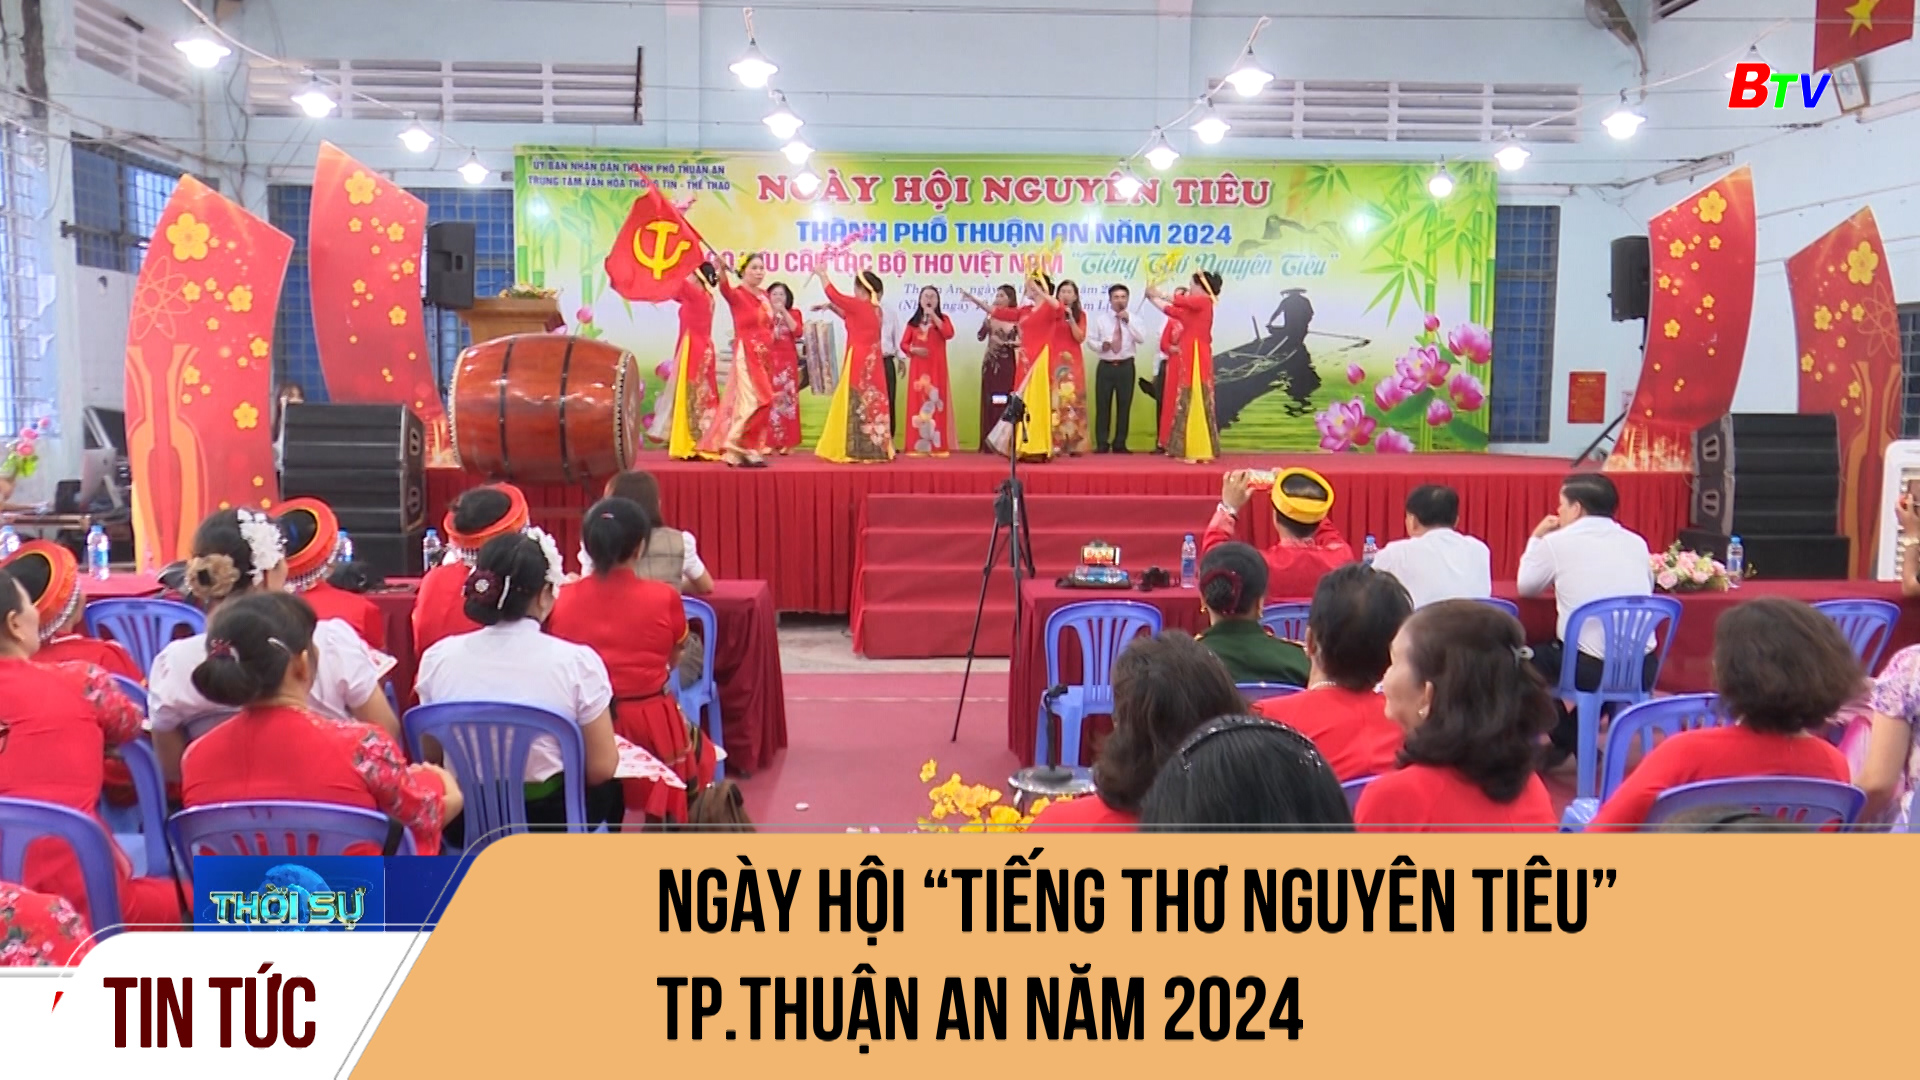 Ngày hội “tiếng thơ nguyên tiêu” Tp.Thuận An năm 2024	